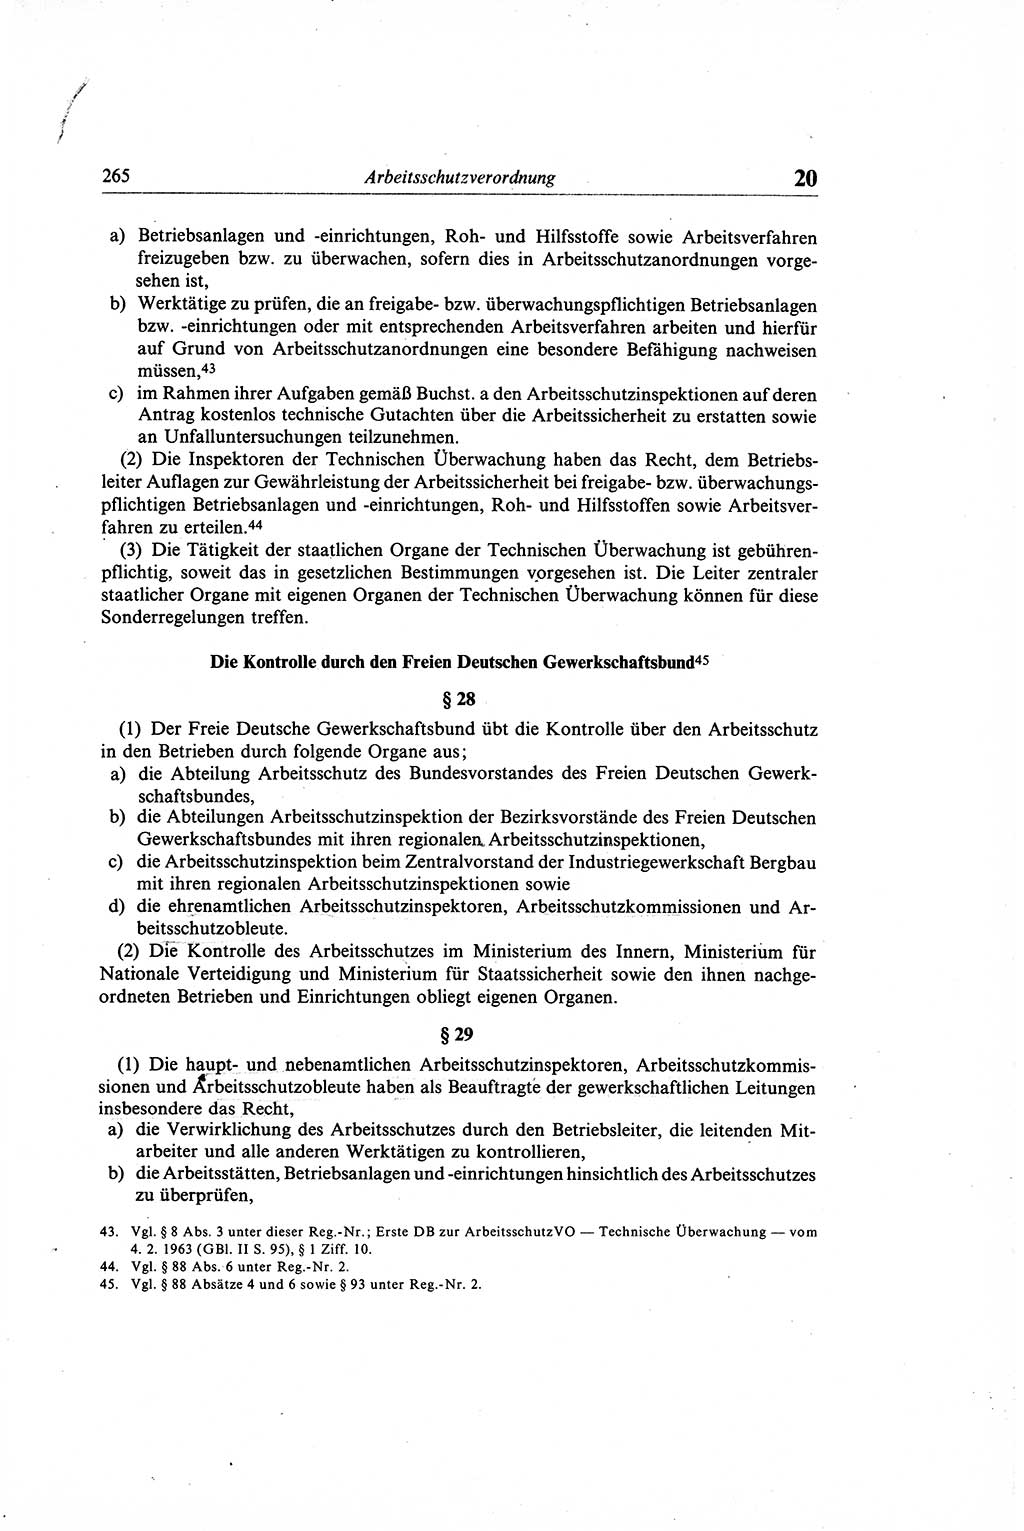 Gesetzbuch der Arbeit (GBA) und andere ausgewählte rechtliche Bestimmungen [Deutsche Demokratische Republik (DDR)] 1968, Seite 265 (GBA DDR 1968, S. 265)